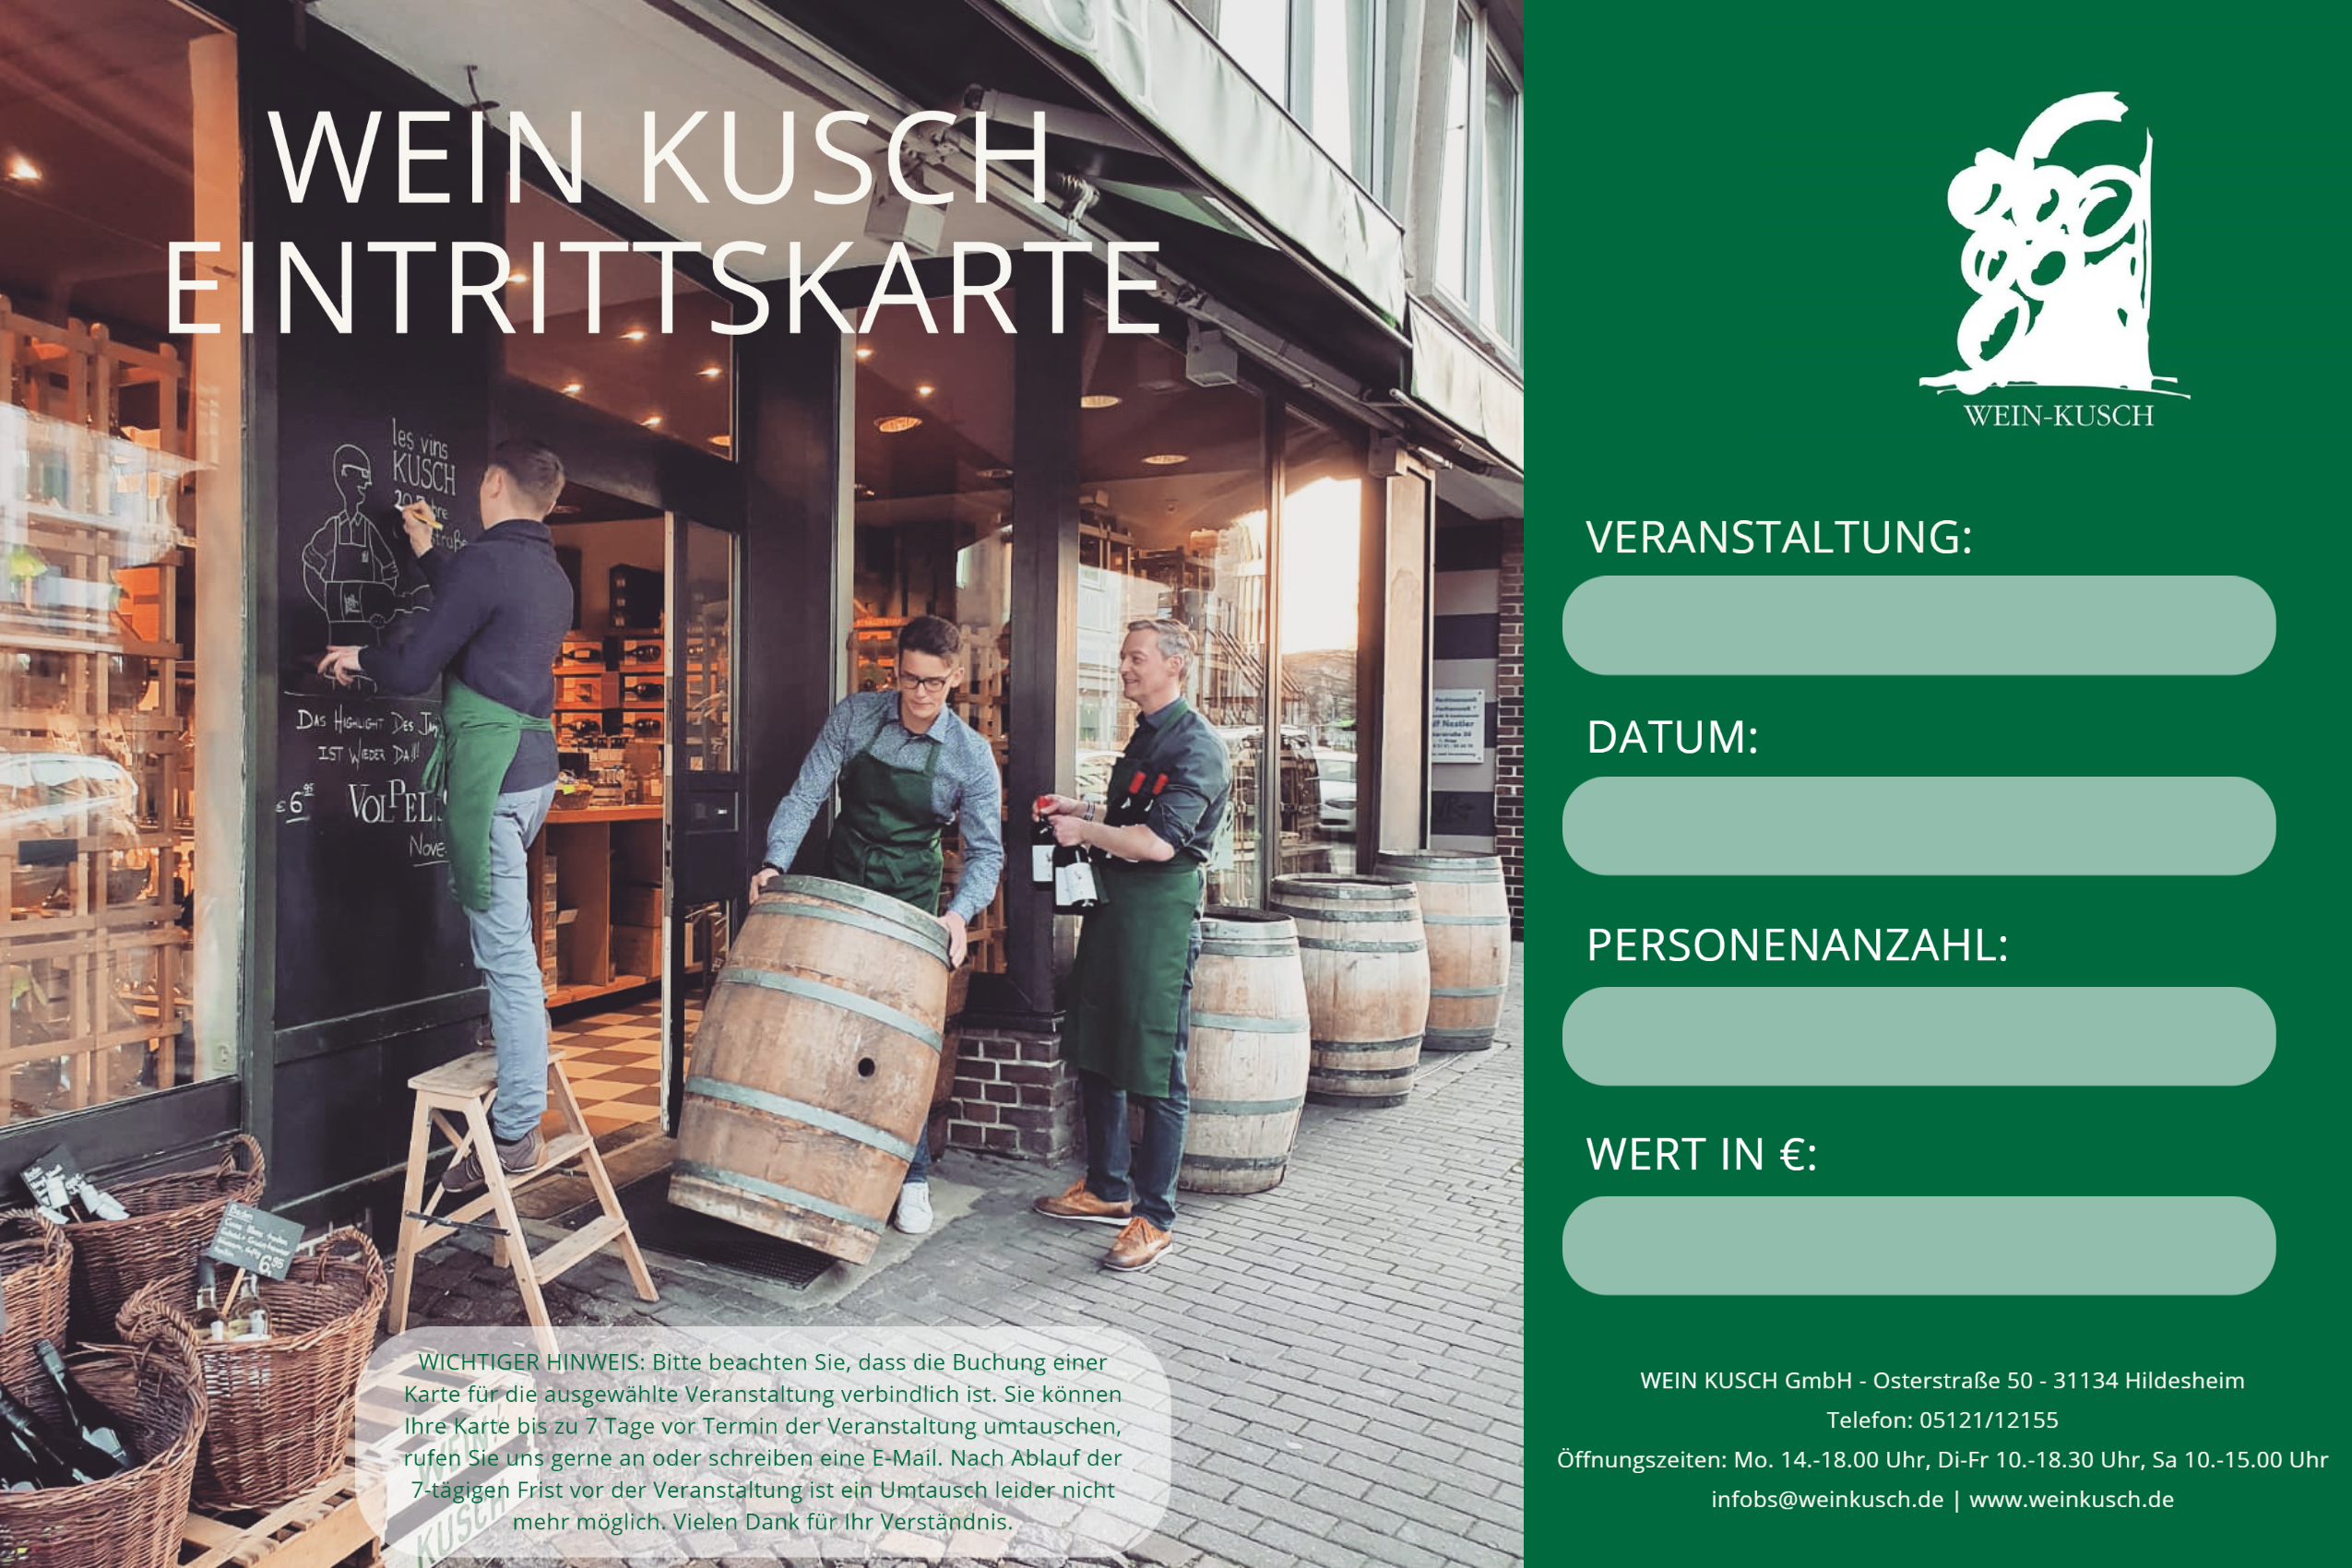 2022.10.14 - Große Weinverkostung in Hildesheim 19-22.00 Uhr